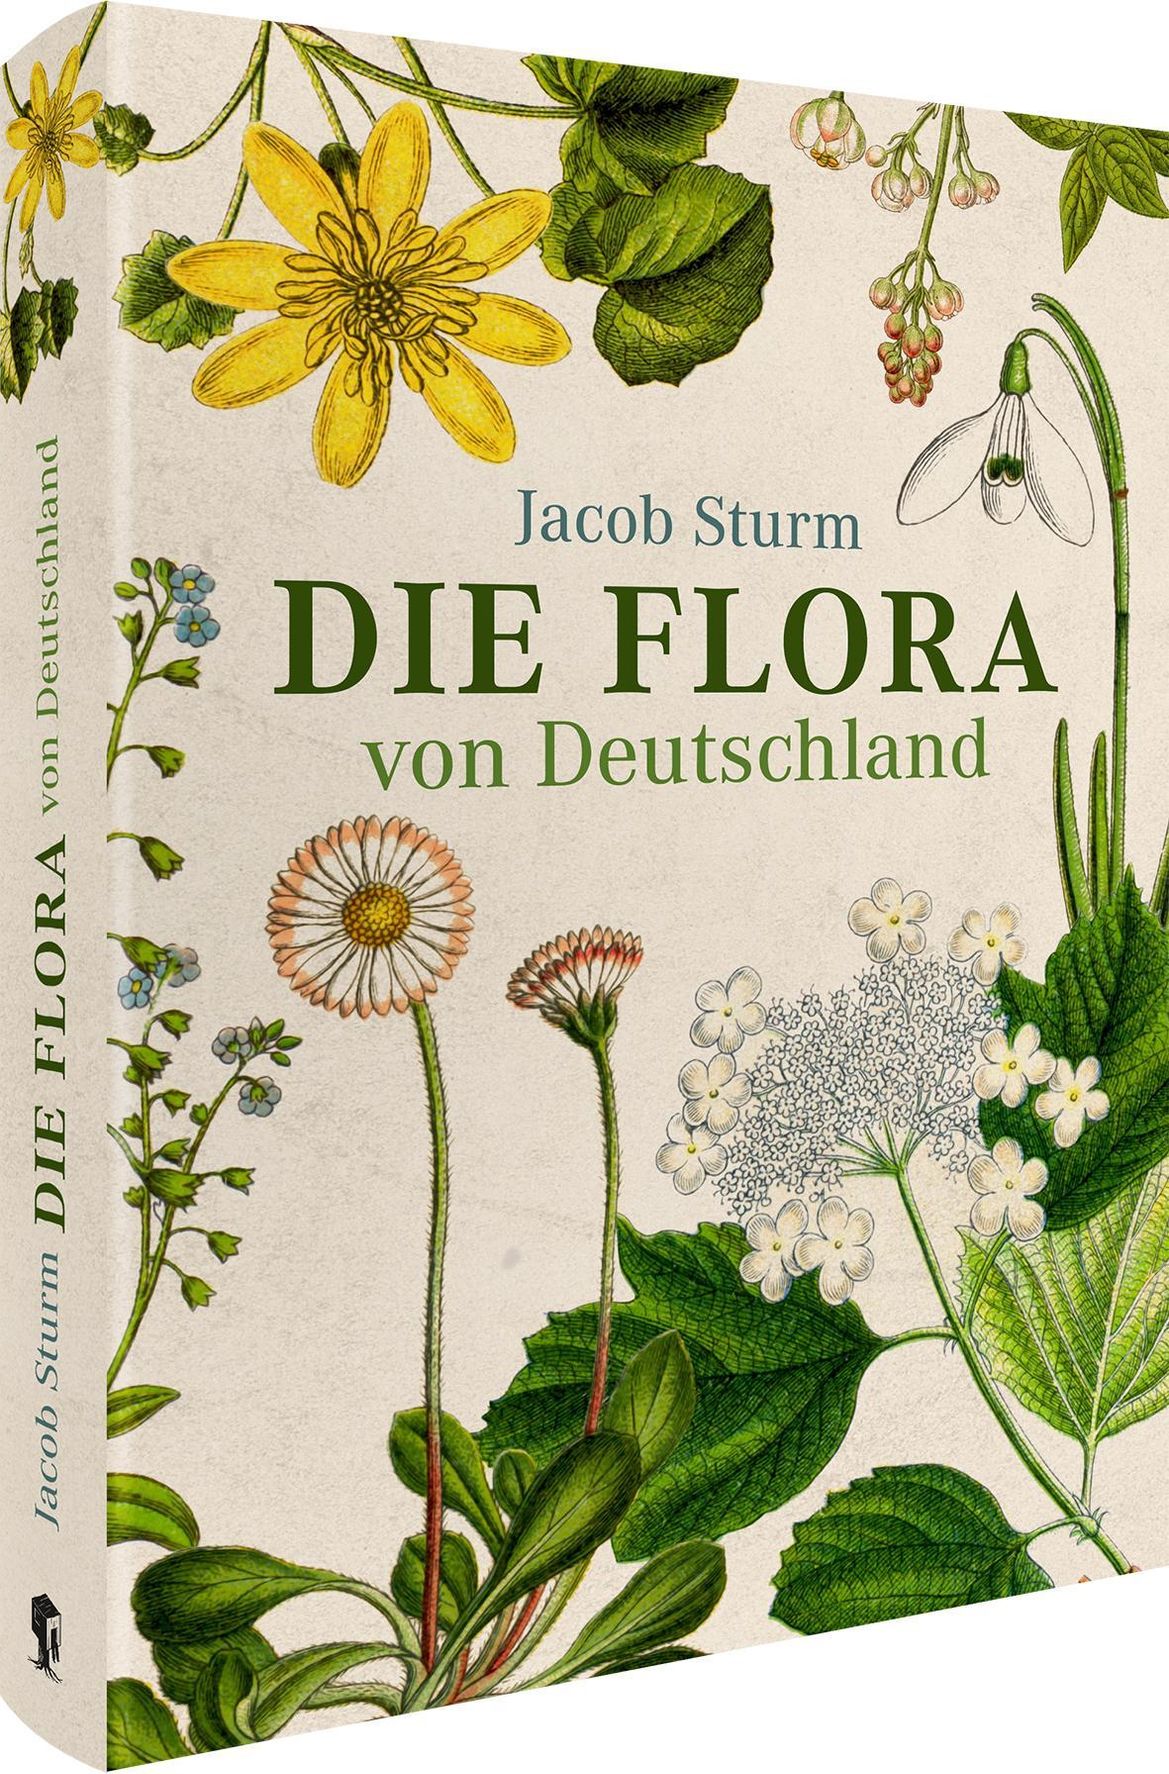 Jacob Sturm - Die Flora von Deutschland Buch versandkostenfrei bestellen